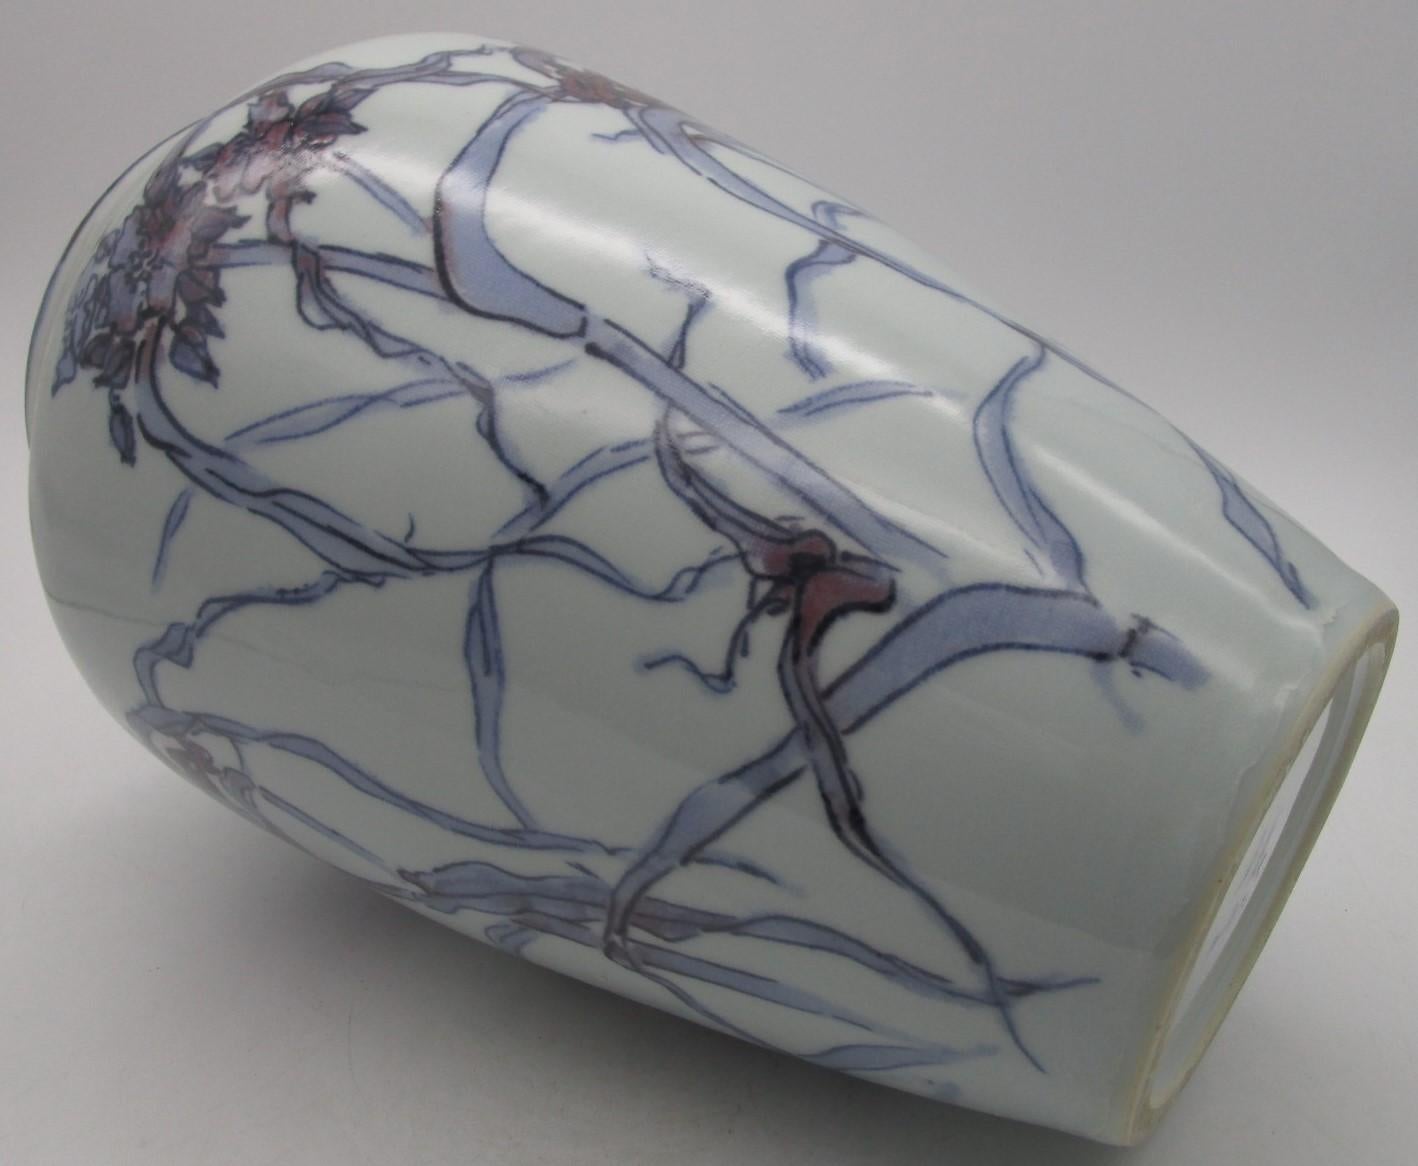 Vase en porcelaine décoratif japonais du milieu du XXe siècle signé (vers 1935,) de la période Showa (1926 à 1985). Il représente un joli motif de carthame, une scène élégante peinte à la main en violet et bleu sous glaçure sur un fond blanc pur,